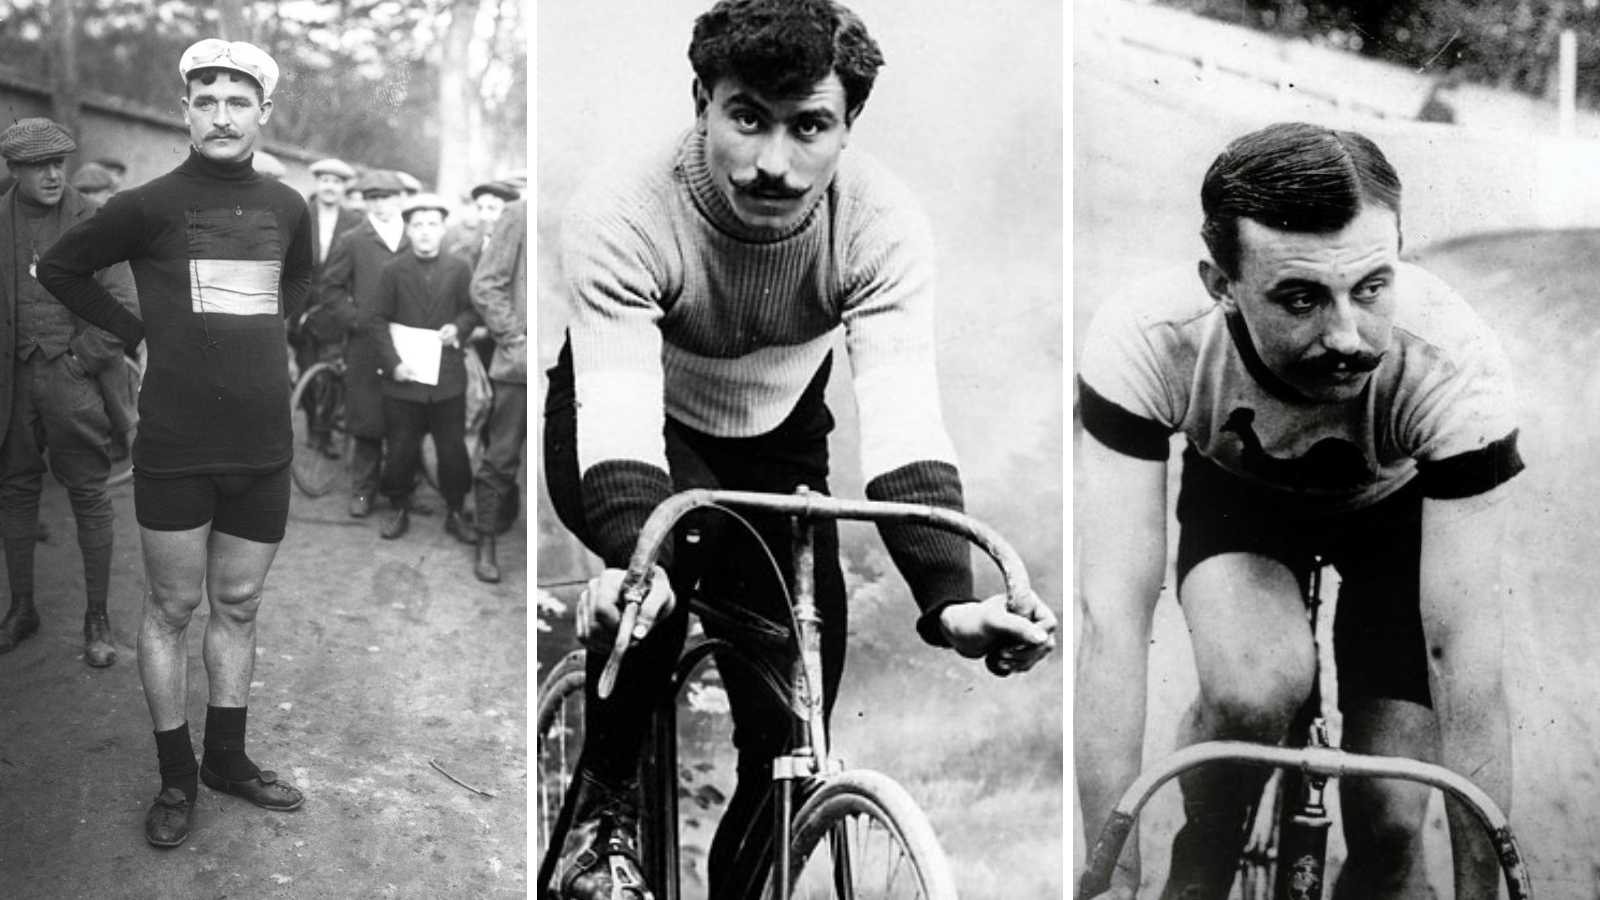 Tour de France winners died during the first world war